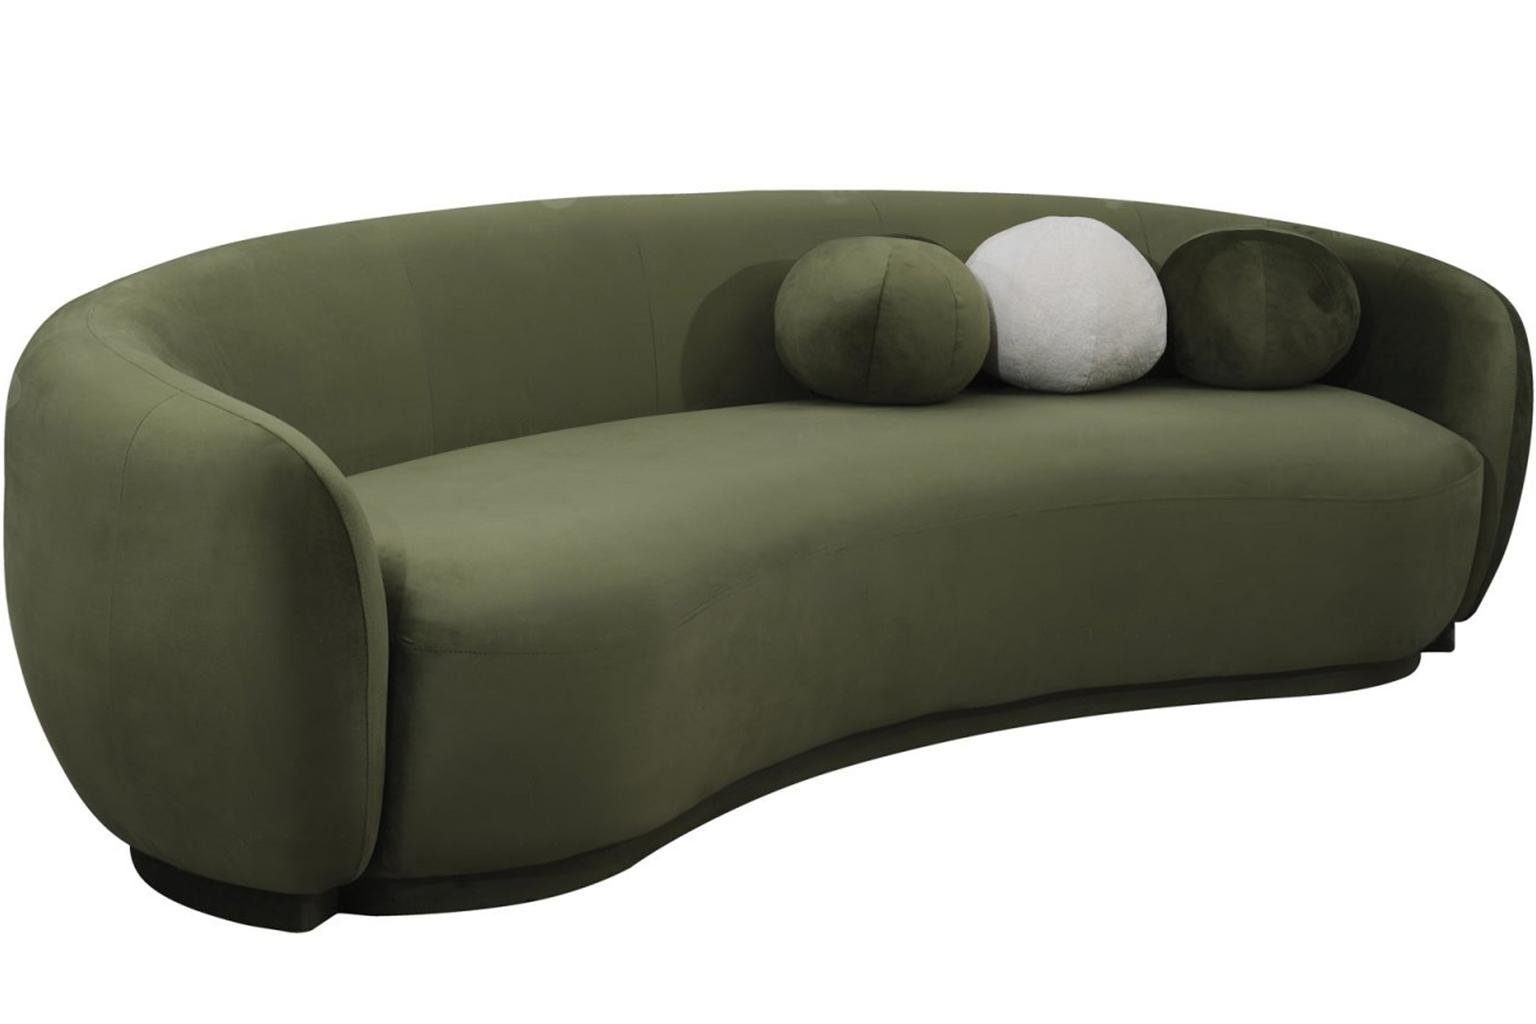 Modern, Made 1 3-Sitzer Couch Teile, JVmoebel 3 Sofa Grün Dreisitzer in Europa Sitzer Luxus Polstersofa